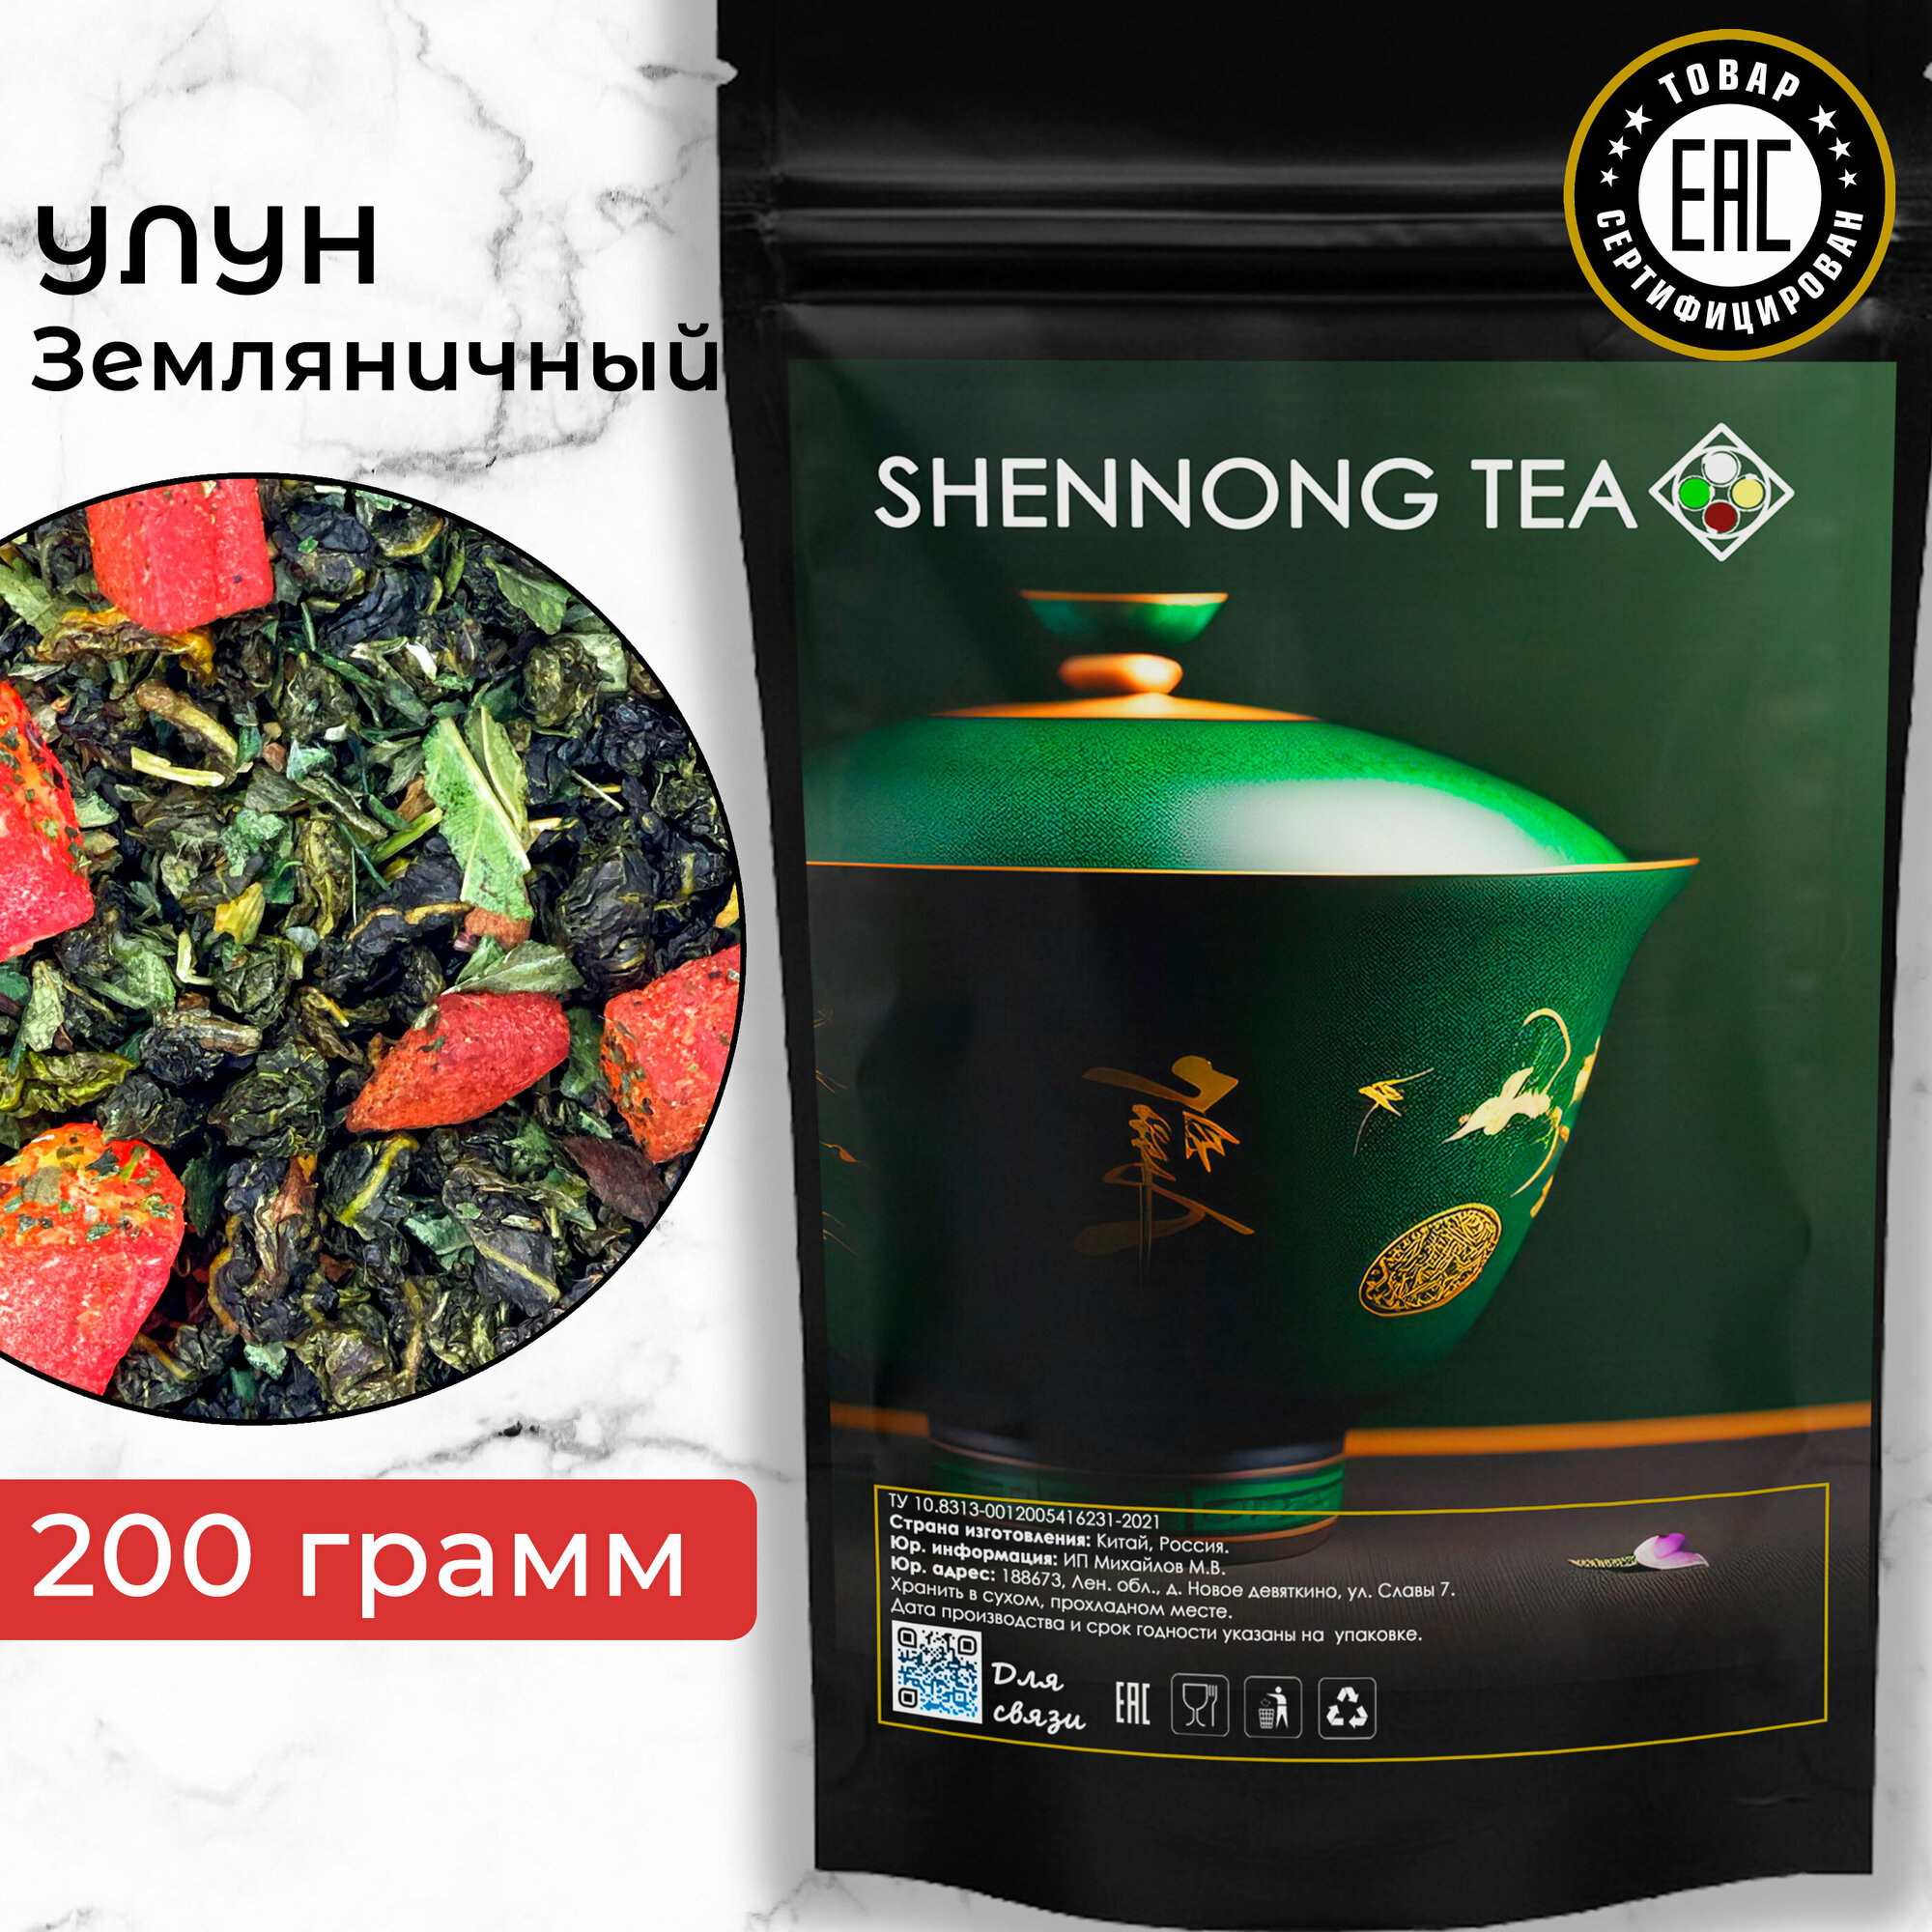 Настоящий китайский чай Улун Земляничный, 200 гр, фруктовый зеленый чай с цукатами, листовой оолонг от Shennong Tea